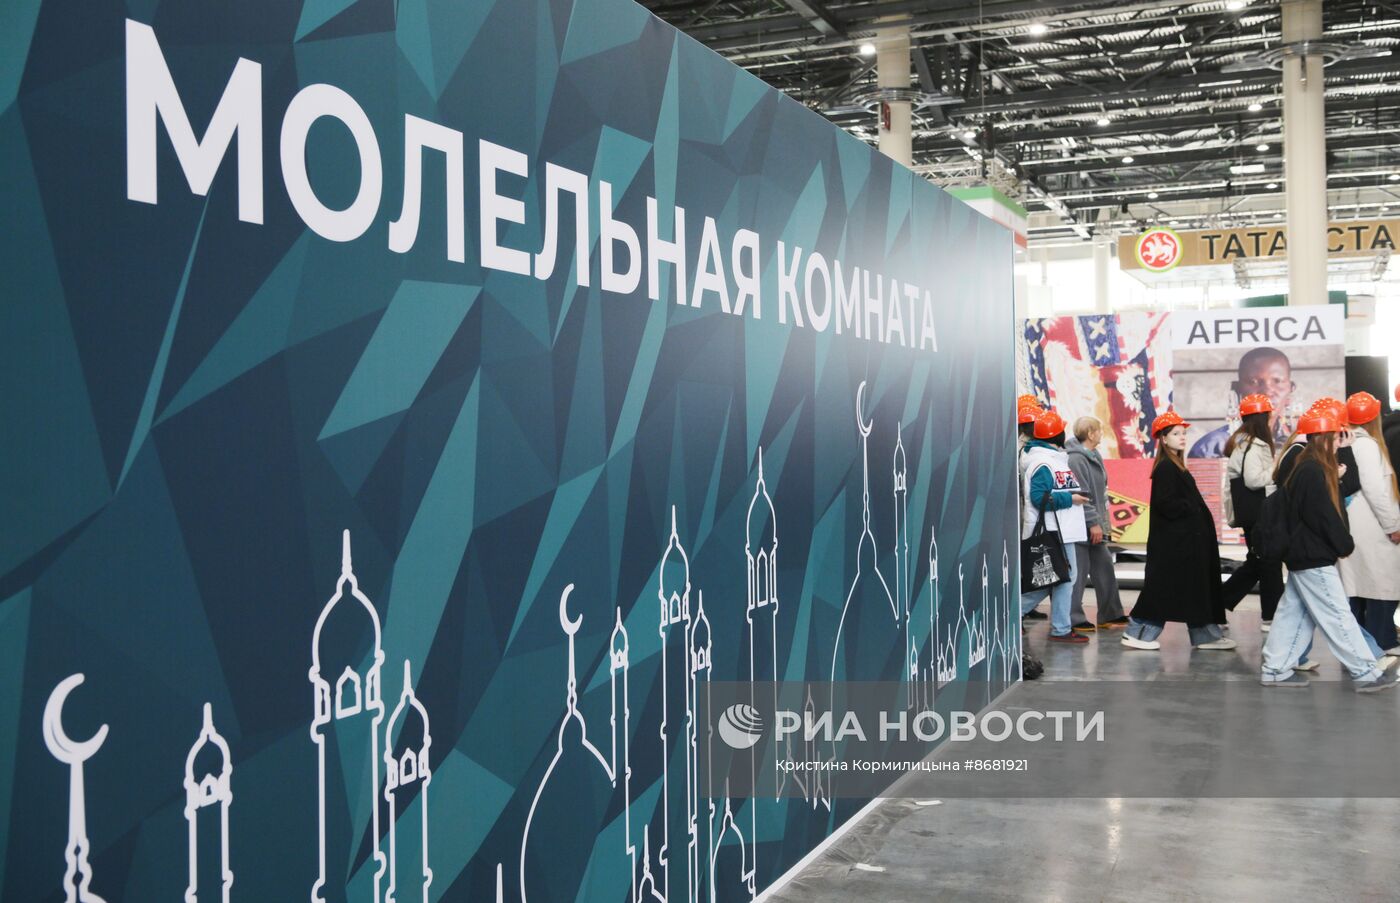 Подготовка к форуму "Россия - исламский мир: KAZANFORUM" 2024